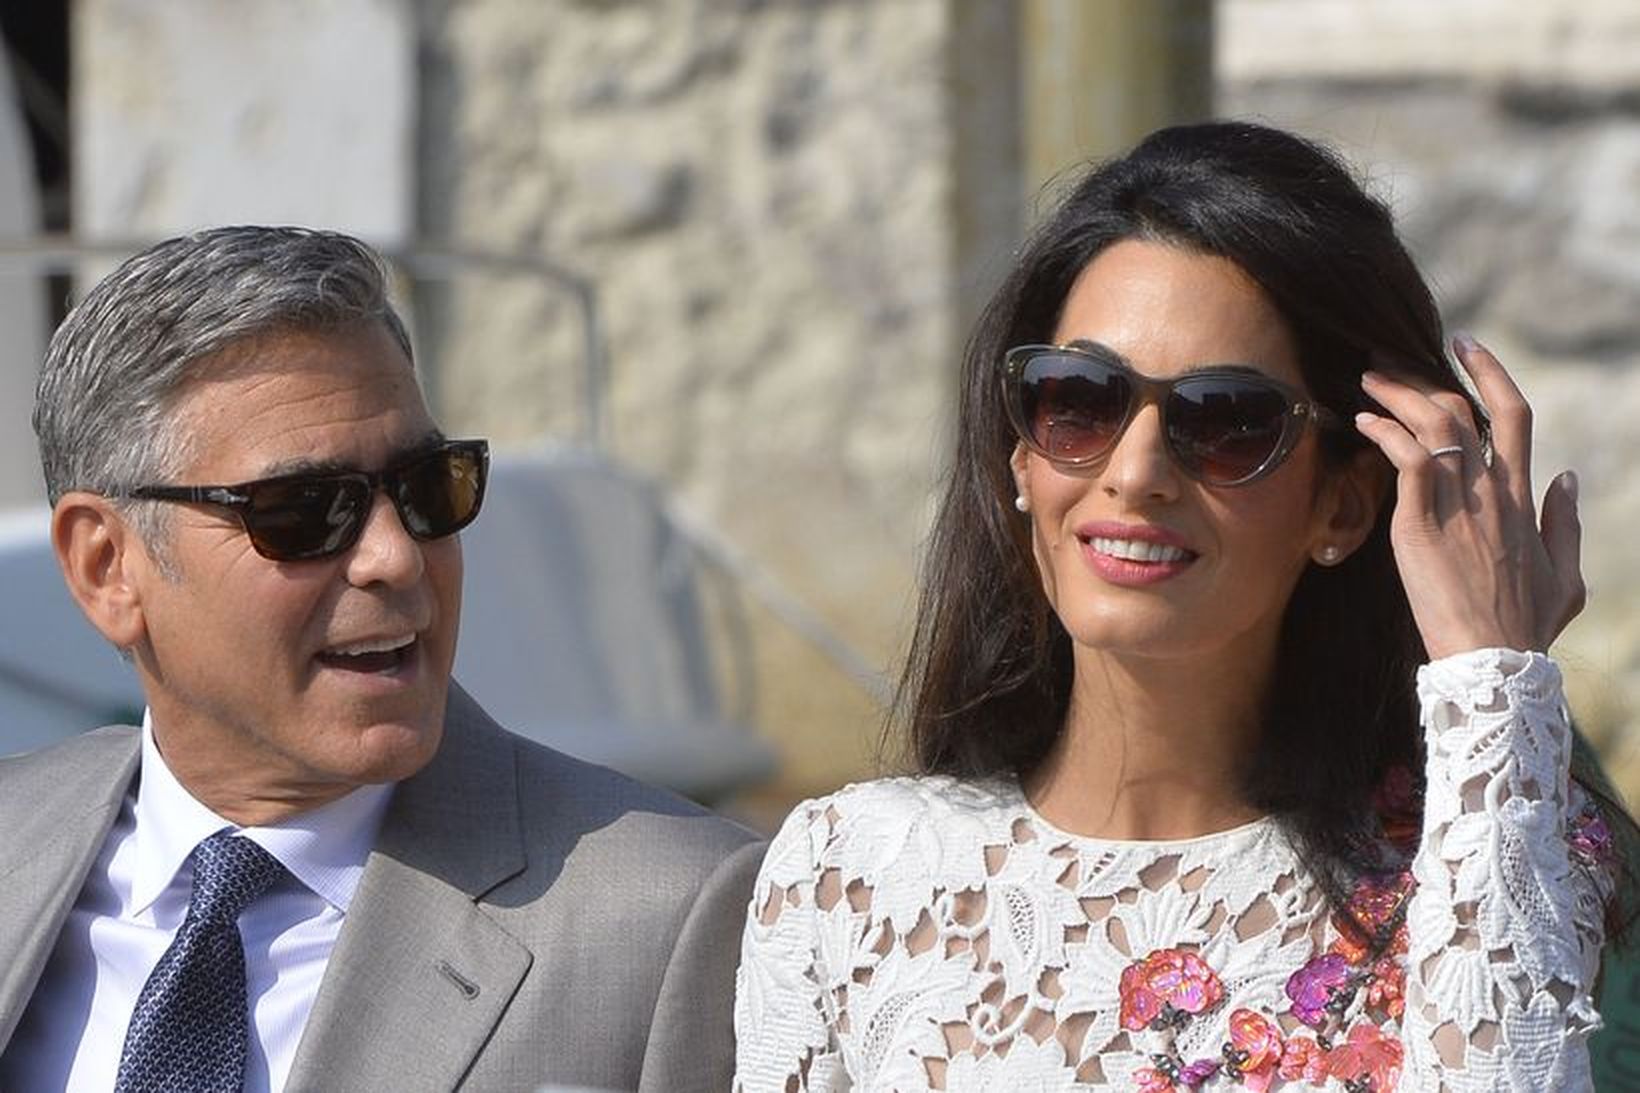 George Clooney og Amal Clooney giftu sig á Ítalíu 2014.